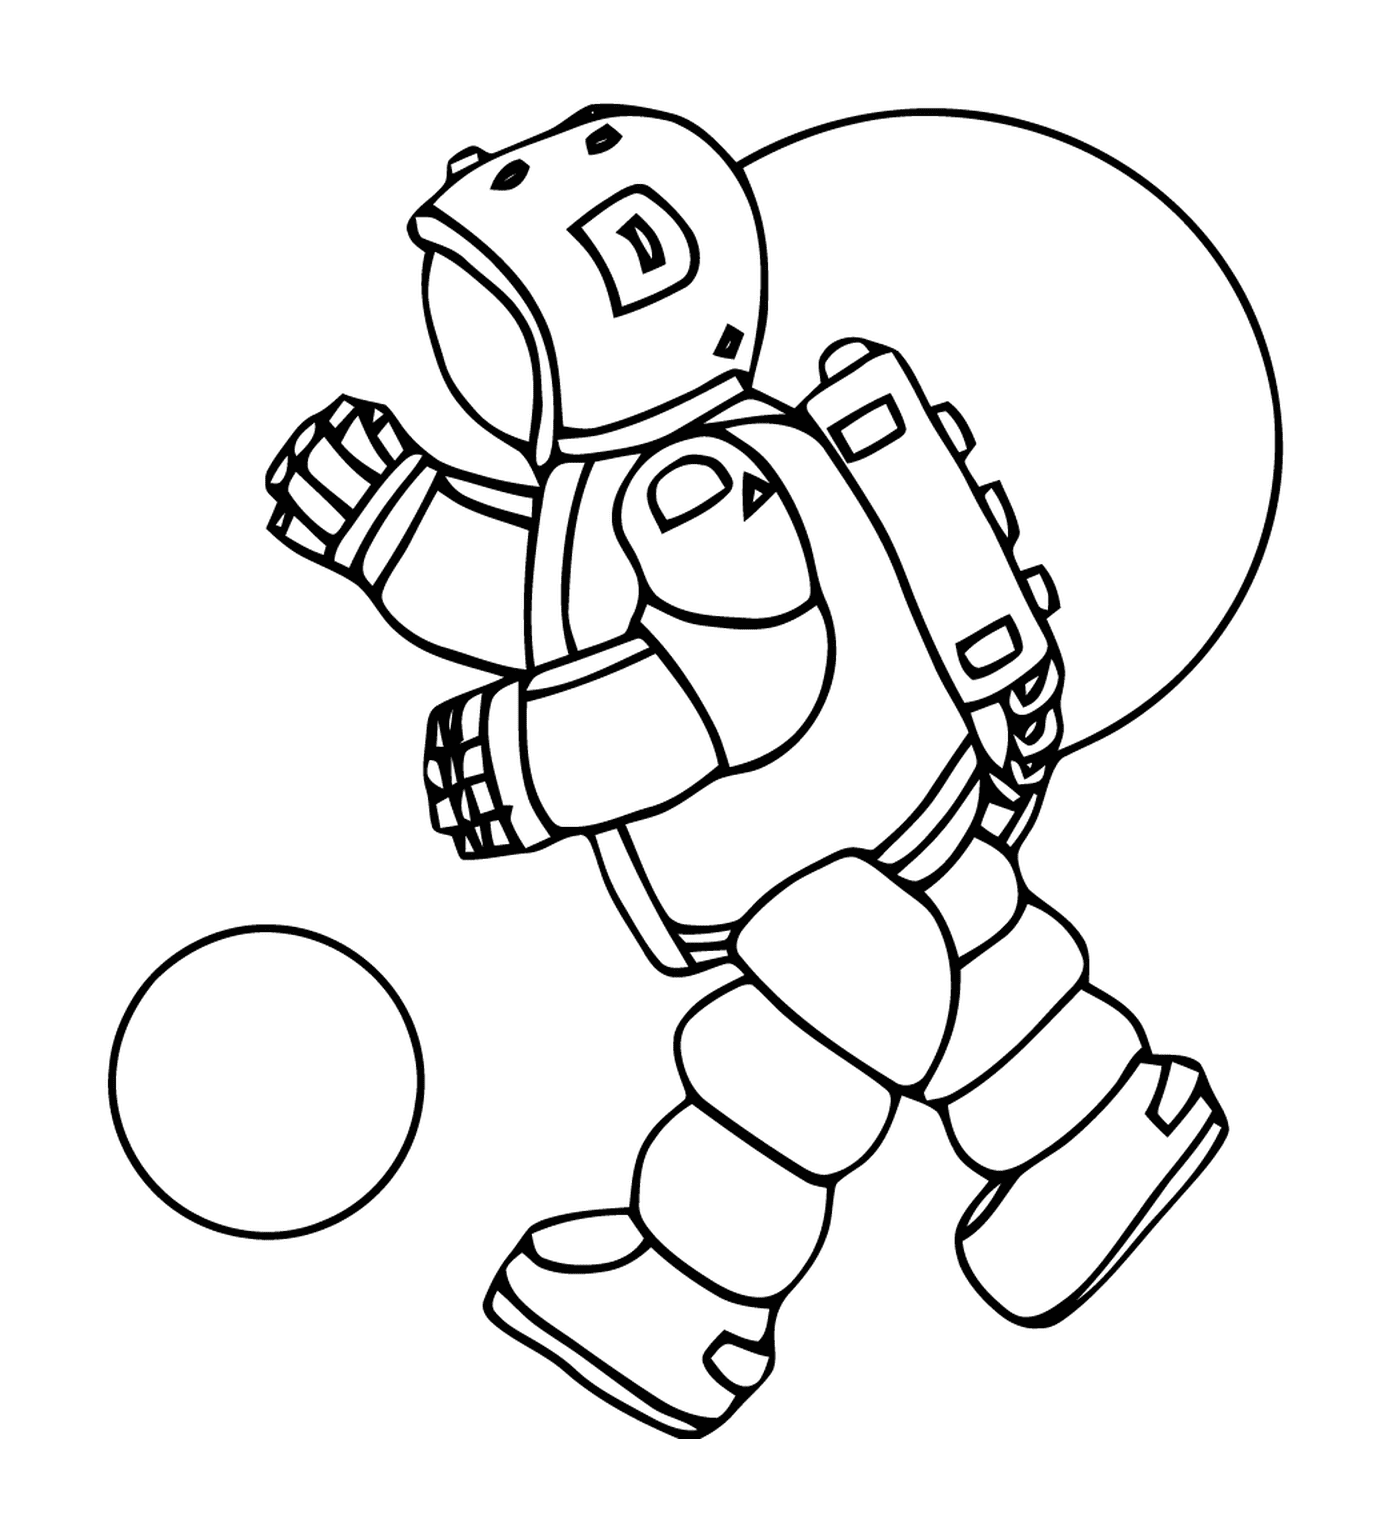  Astronauta brincando com uma bola 